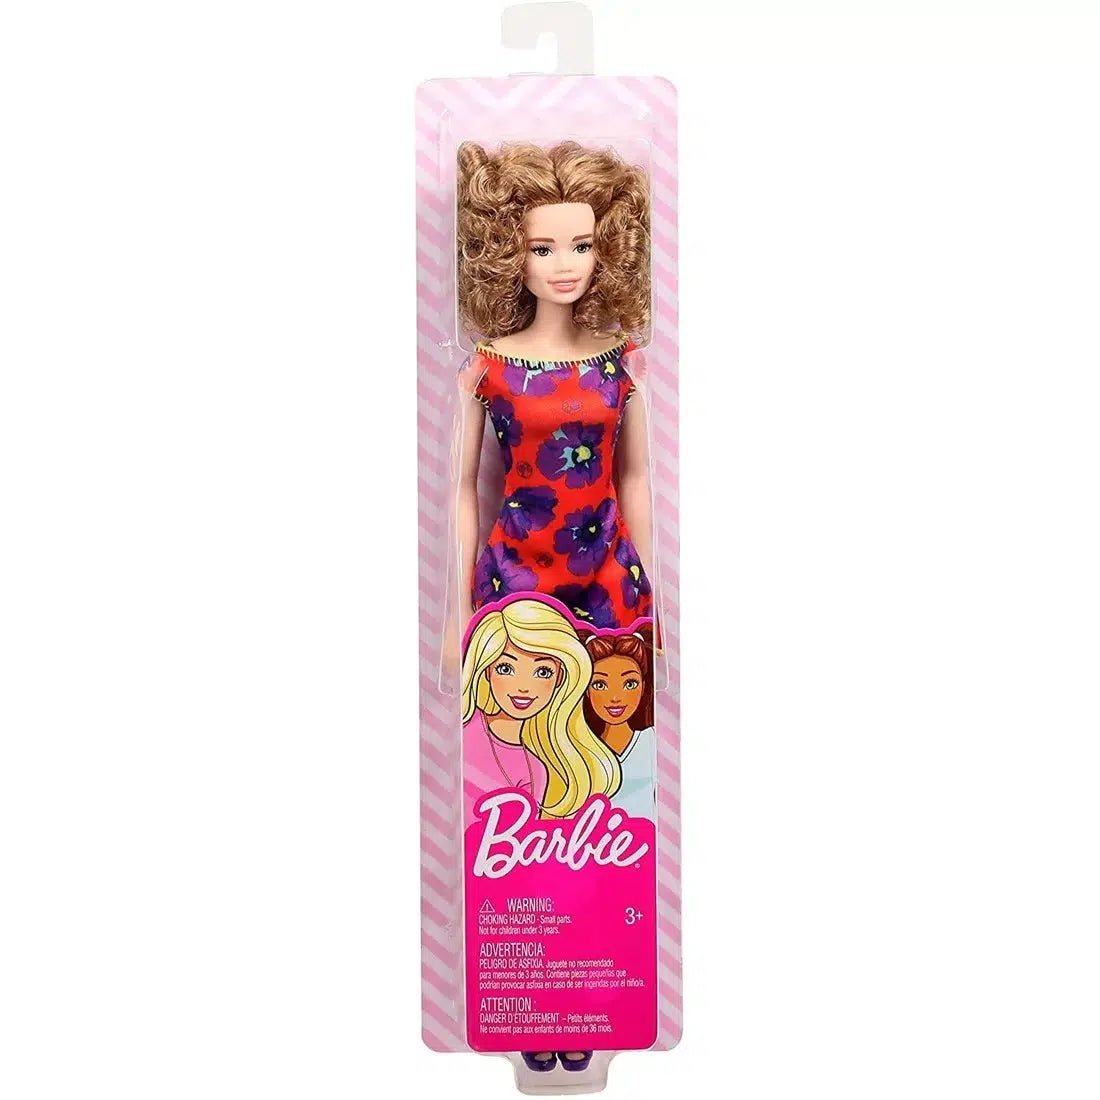 Plastic Dreams Dolls :: Barbie et miniatures: Fashionistas Barbie